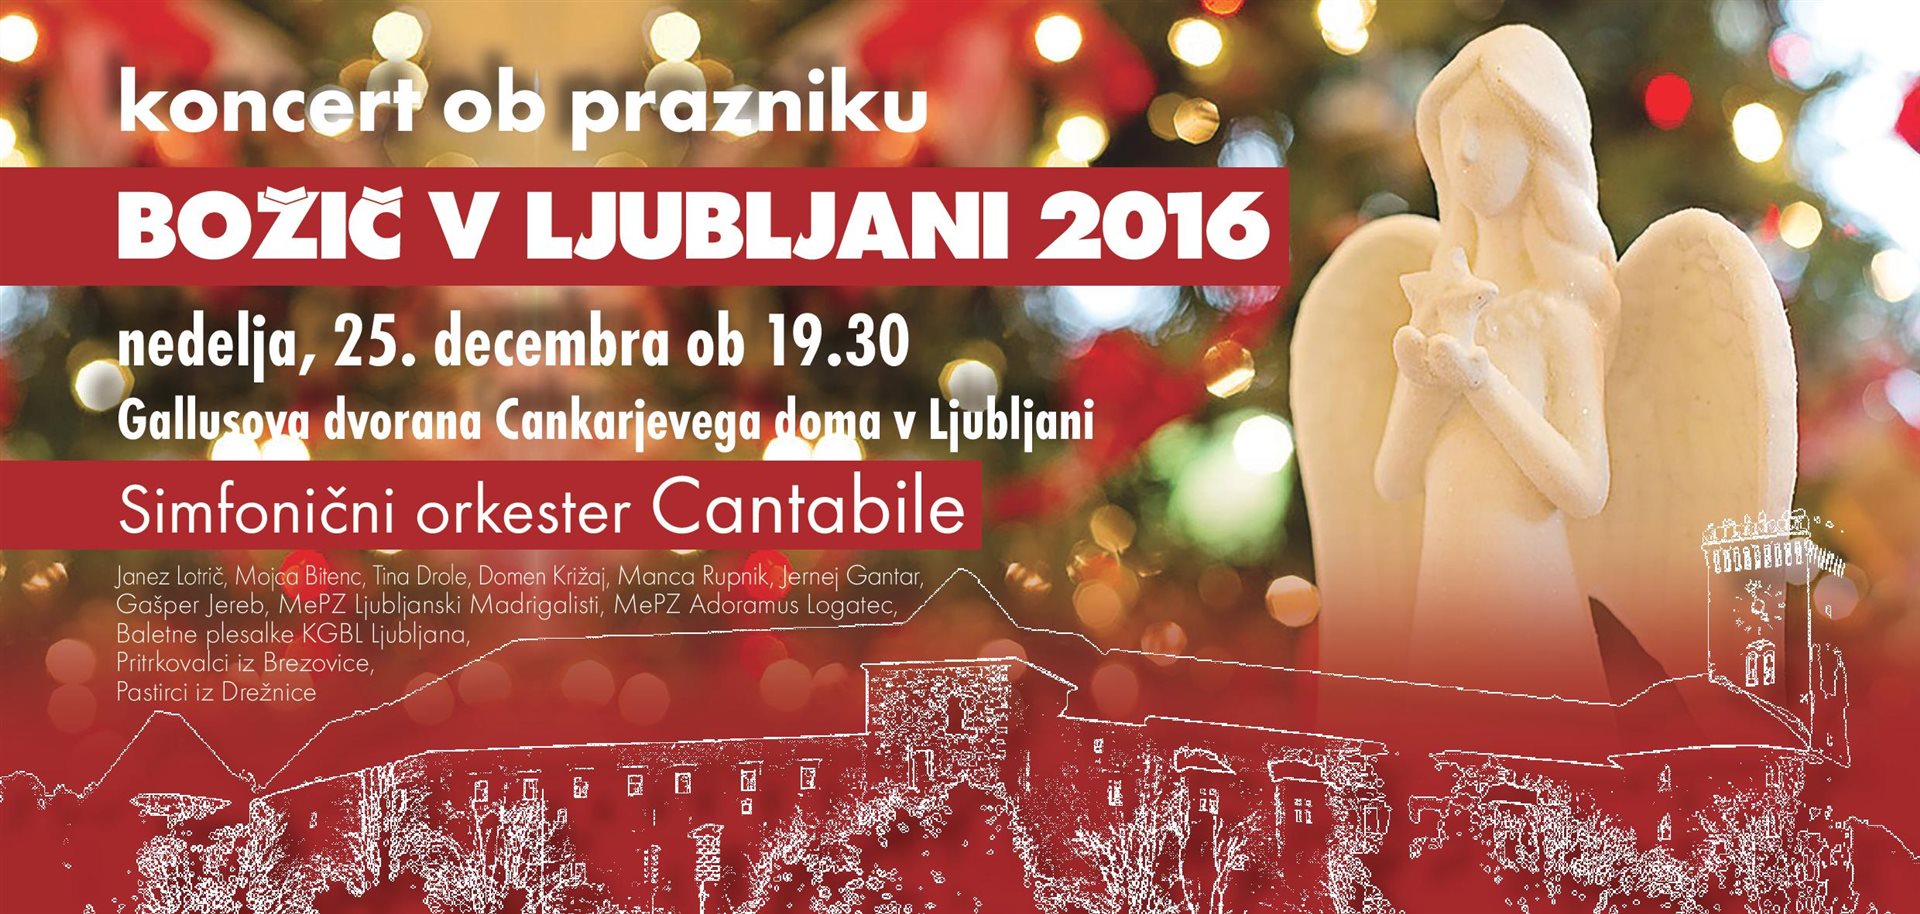 Božič v Ljubljani